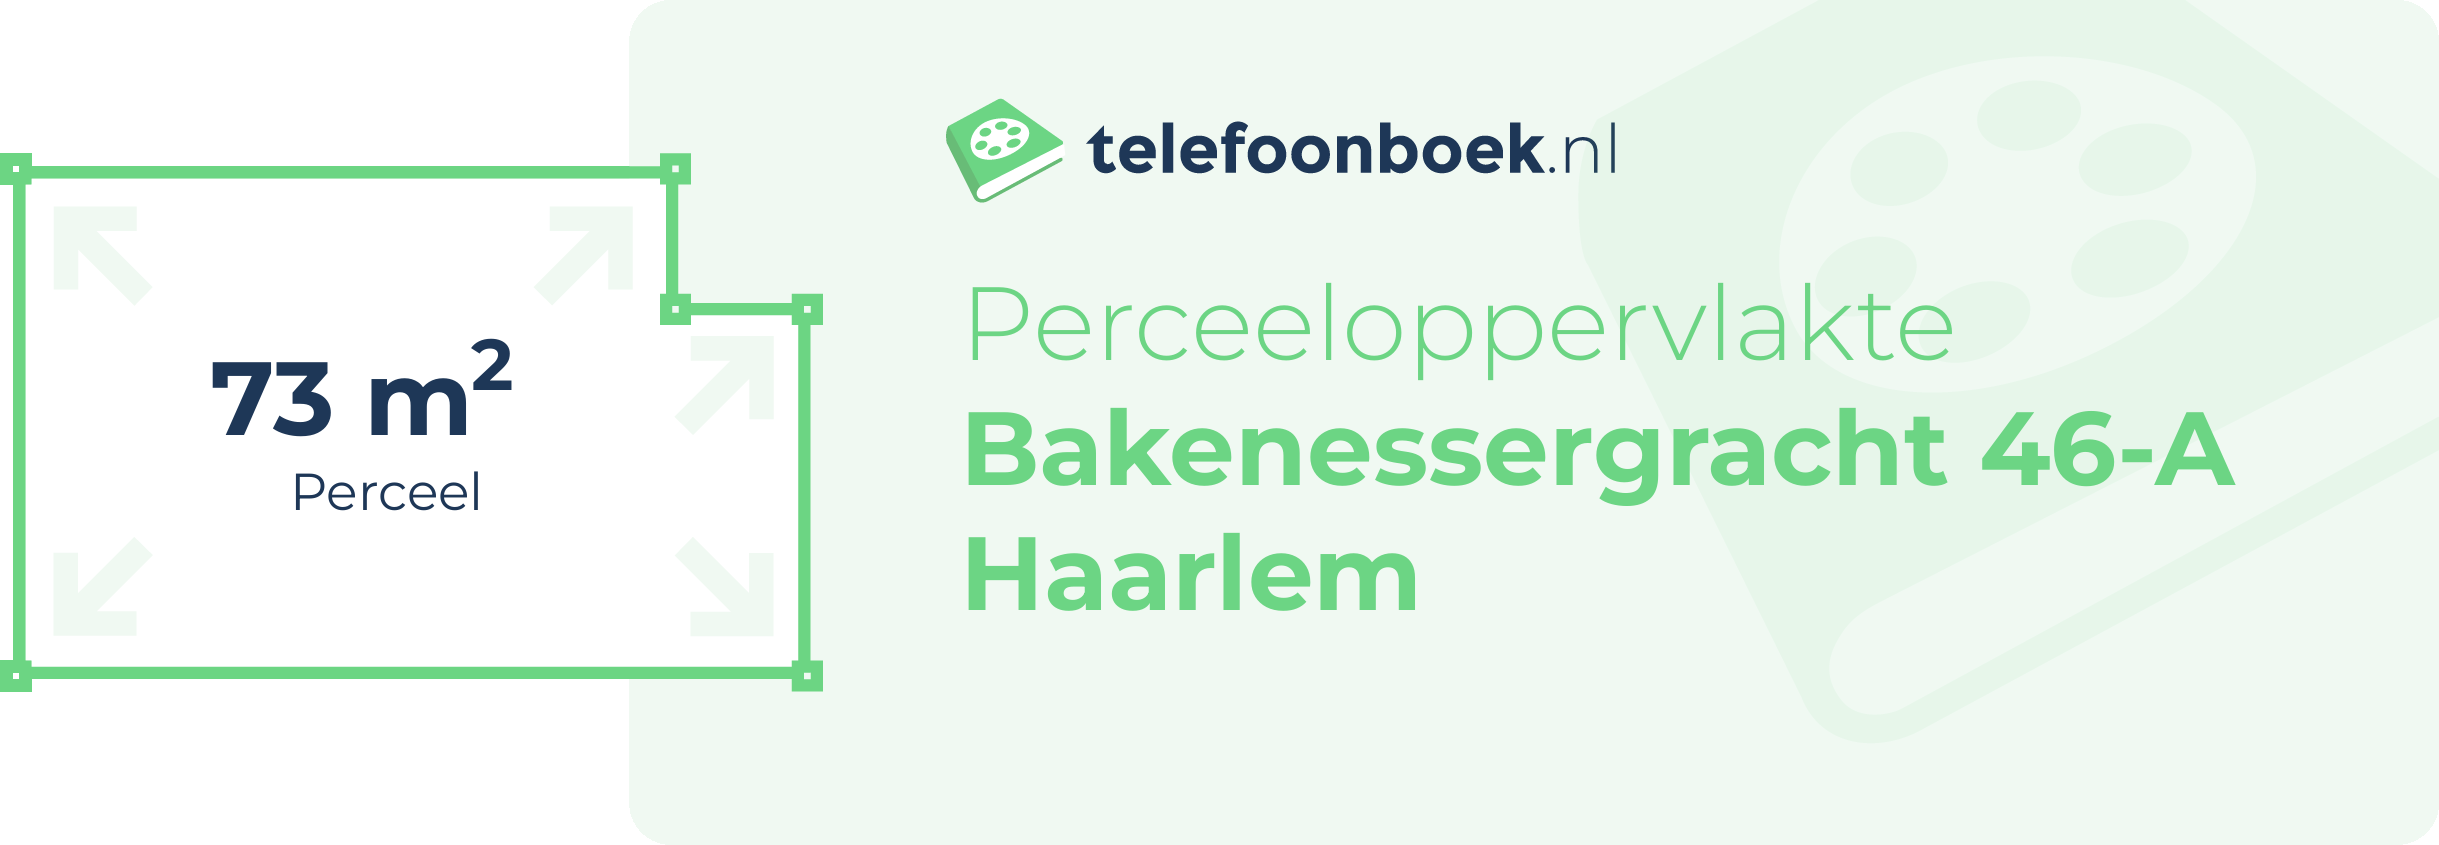 Perceeloppervlakte Bakenessergracht 46-A Haarlem